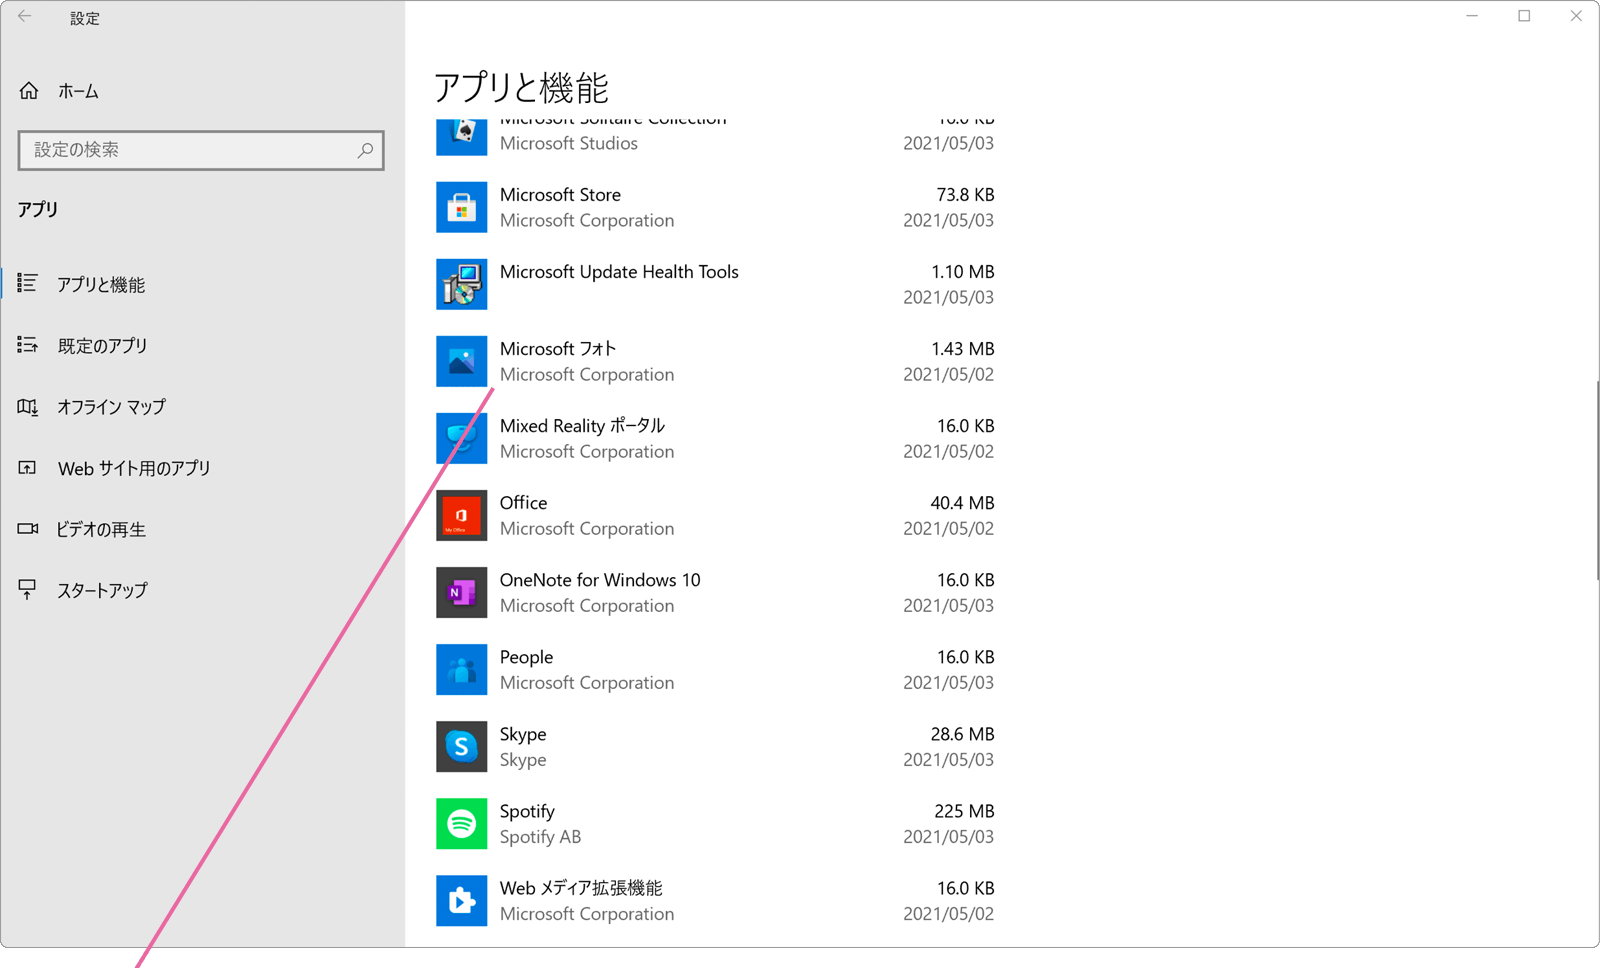 Windows10でフォトが開かない Windowsfaq